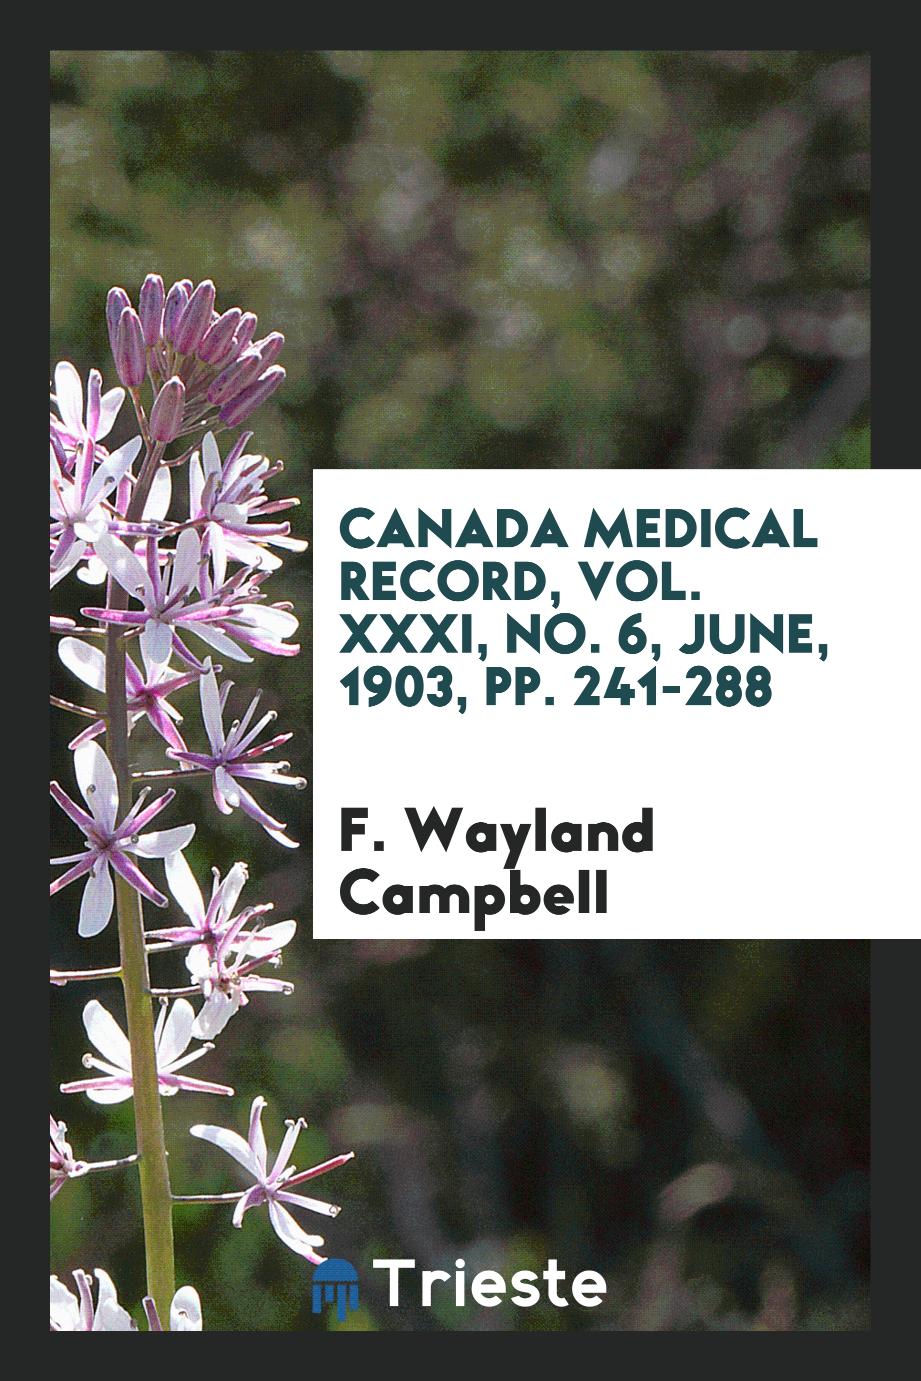 Canada Medical Record, Vol. XXXI, No. 6, June, 1903, pp. 241-288